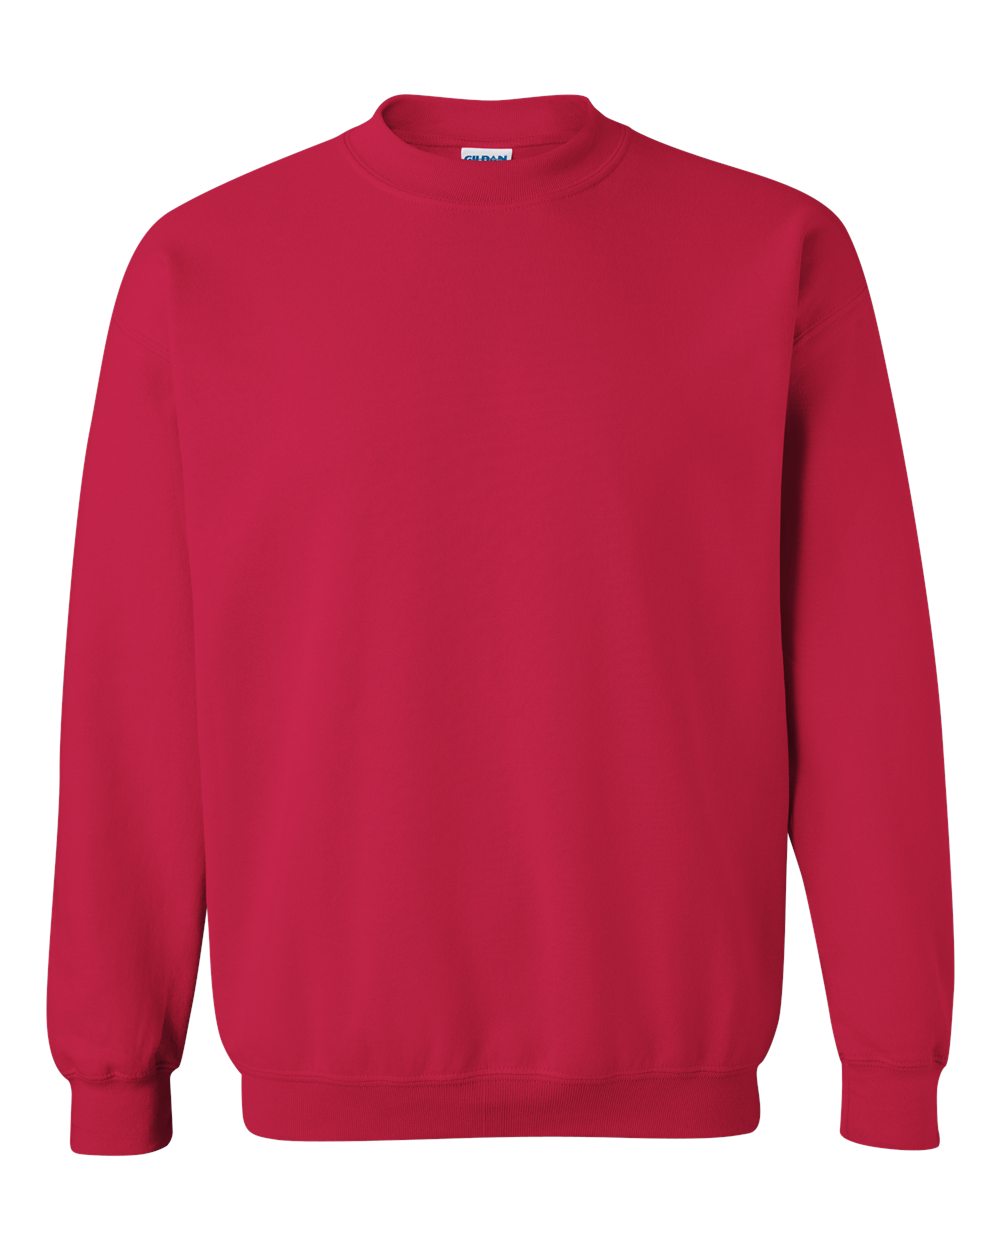 Gildan Crewneck Sweatshirt (18000) in Cherry Red